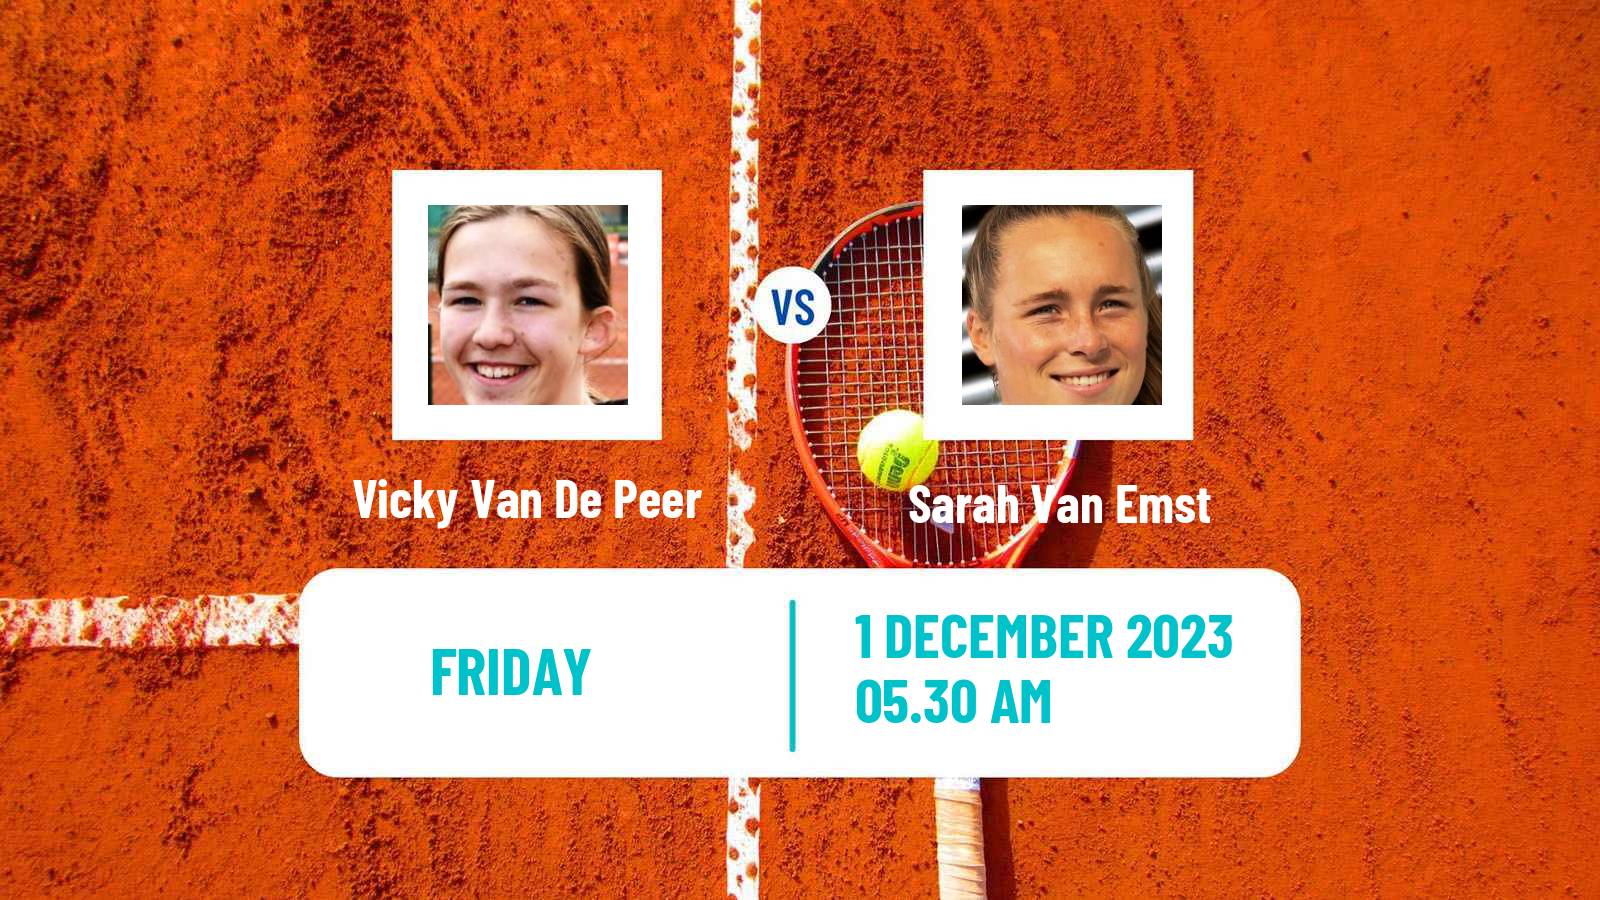 Tennis ITF W15 Monastir 42 Women Vicky Van De Peer - Sarah Van Emst